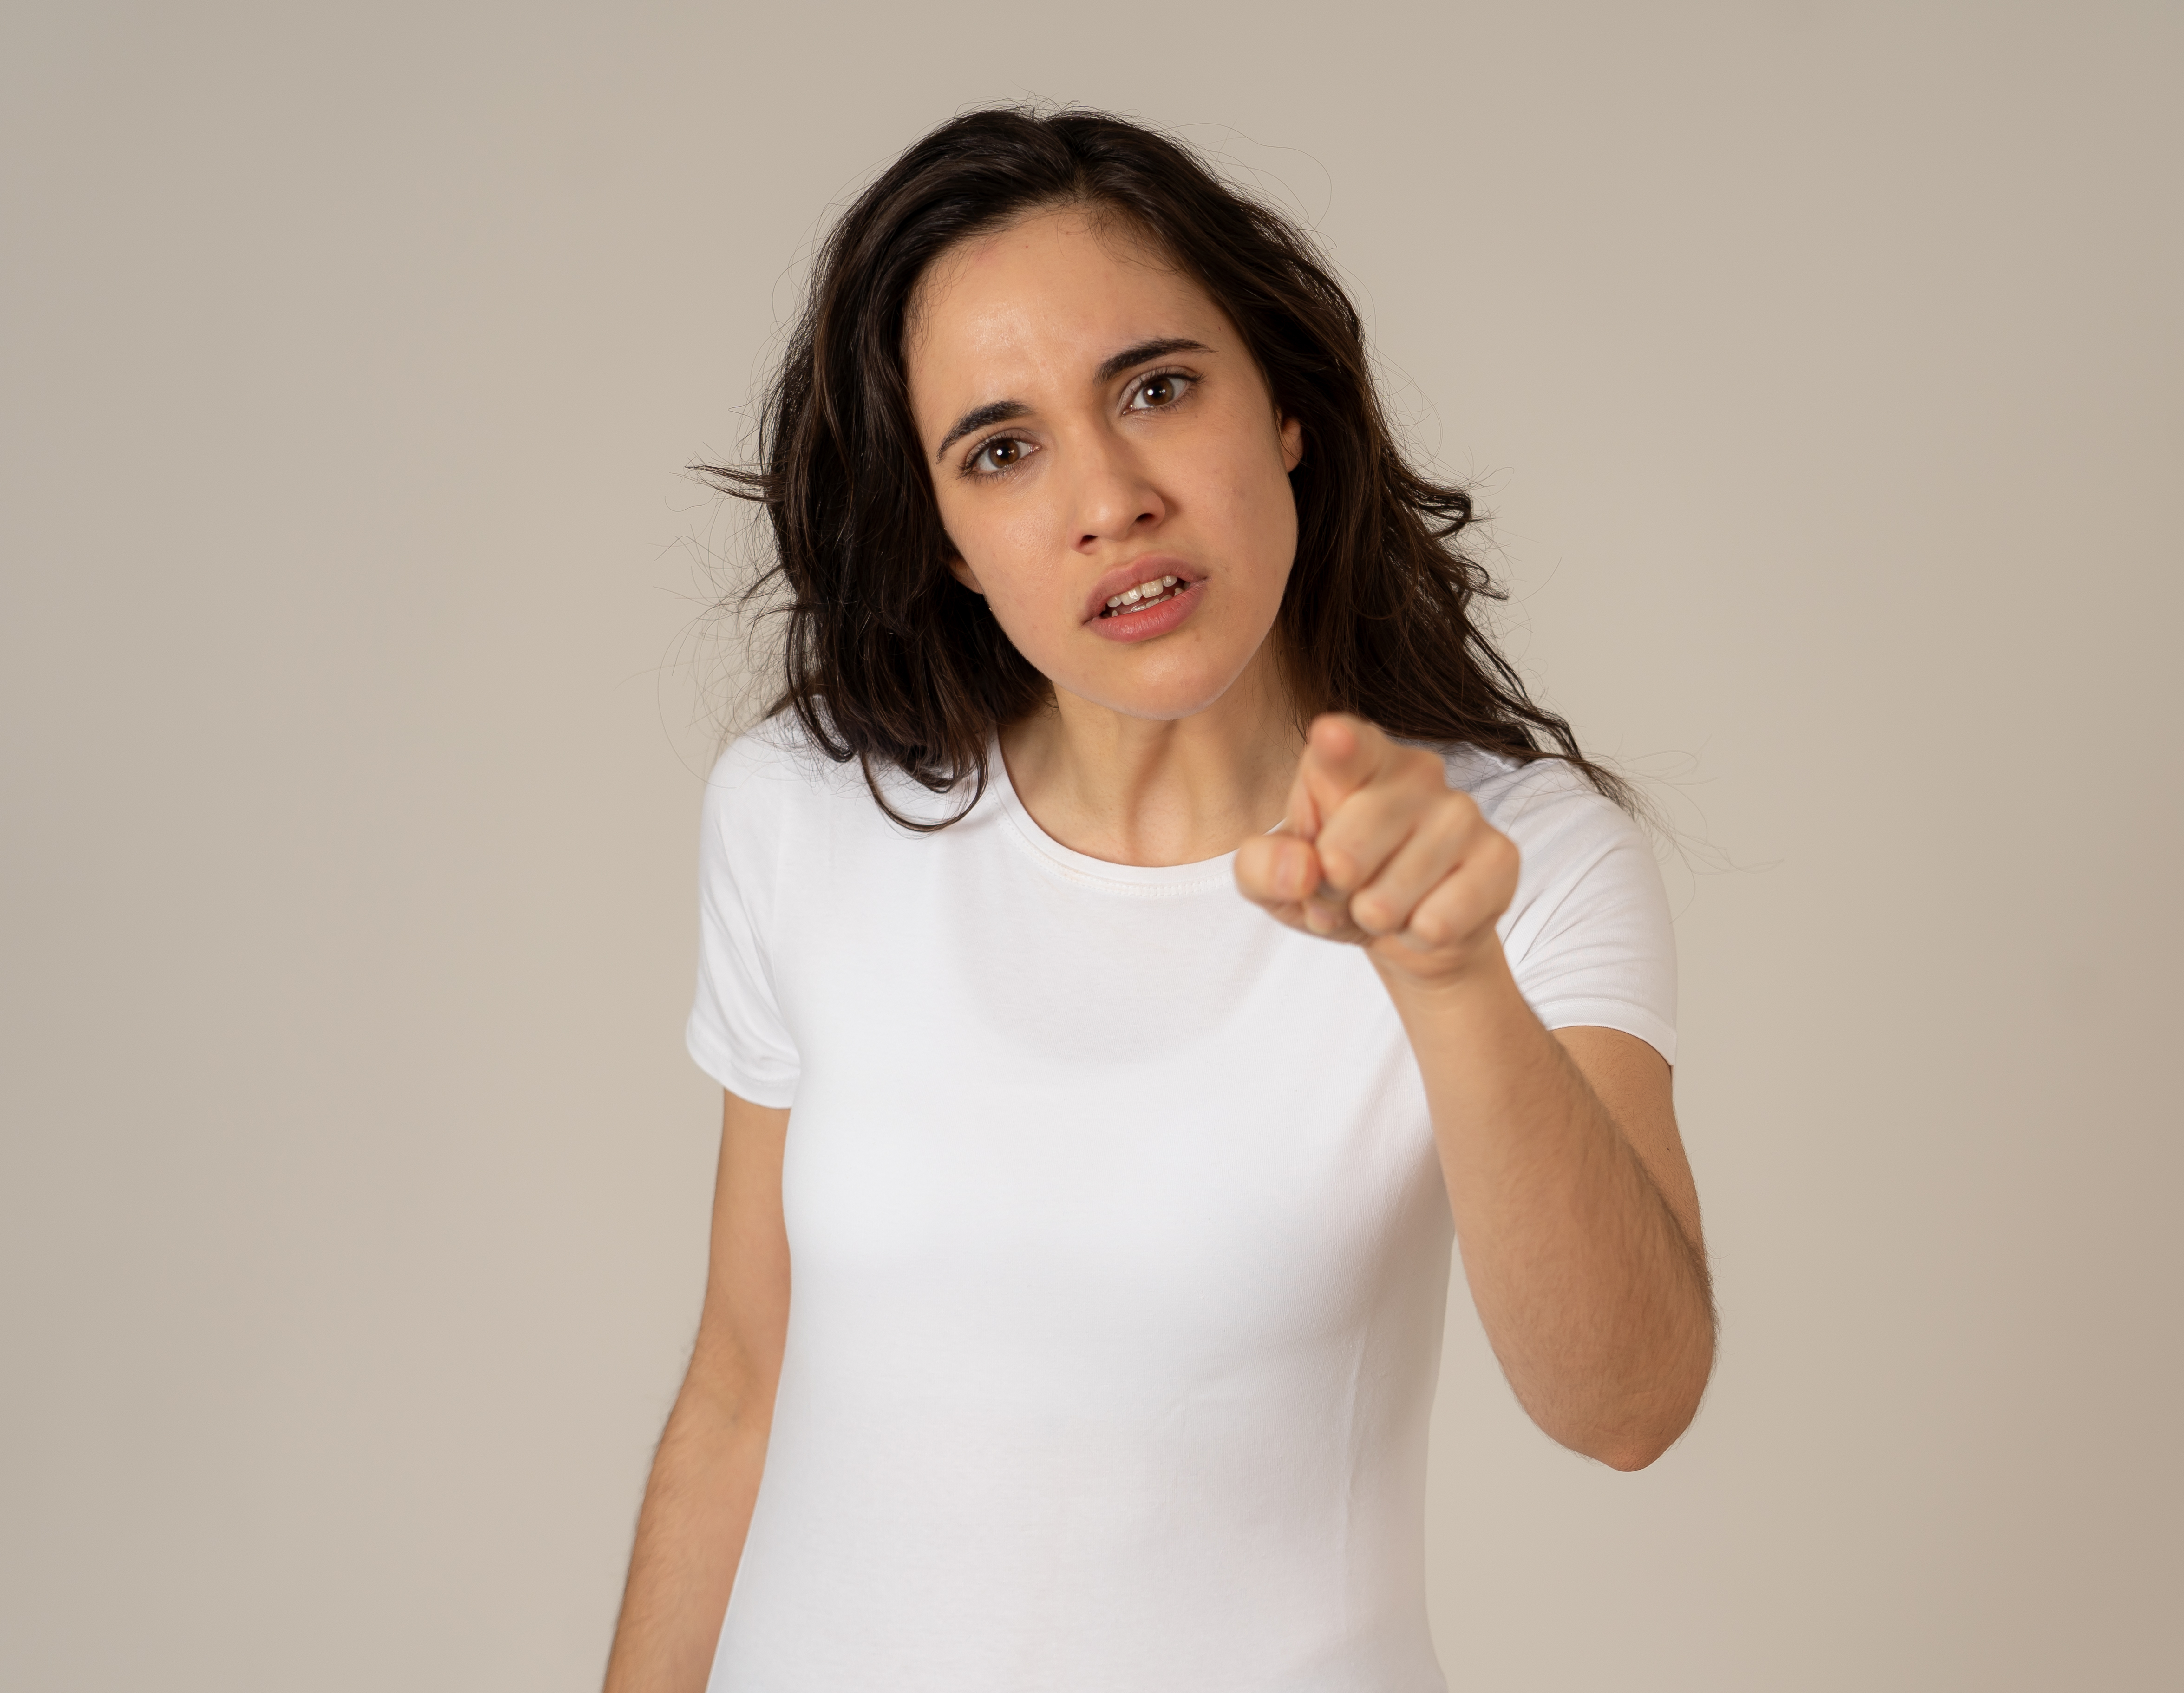 Une femme en colère qui pointe un doigt accusateur | Source : Shutterstock